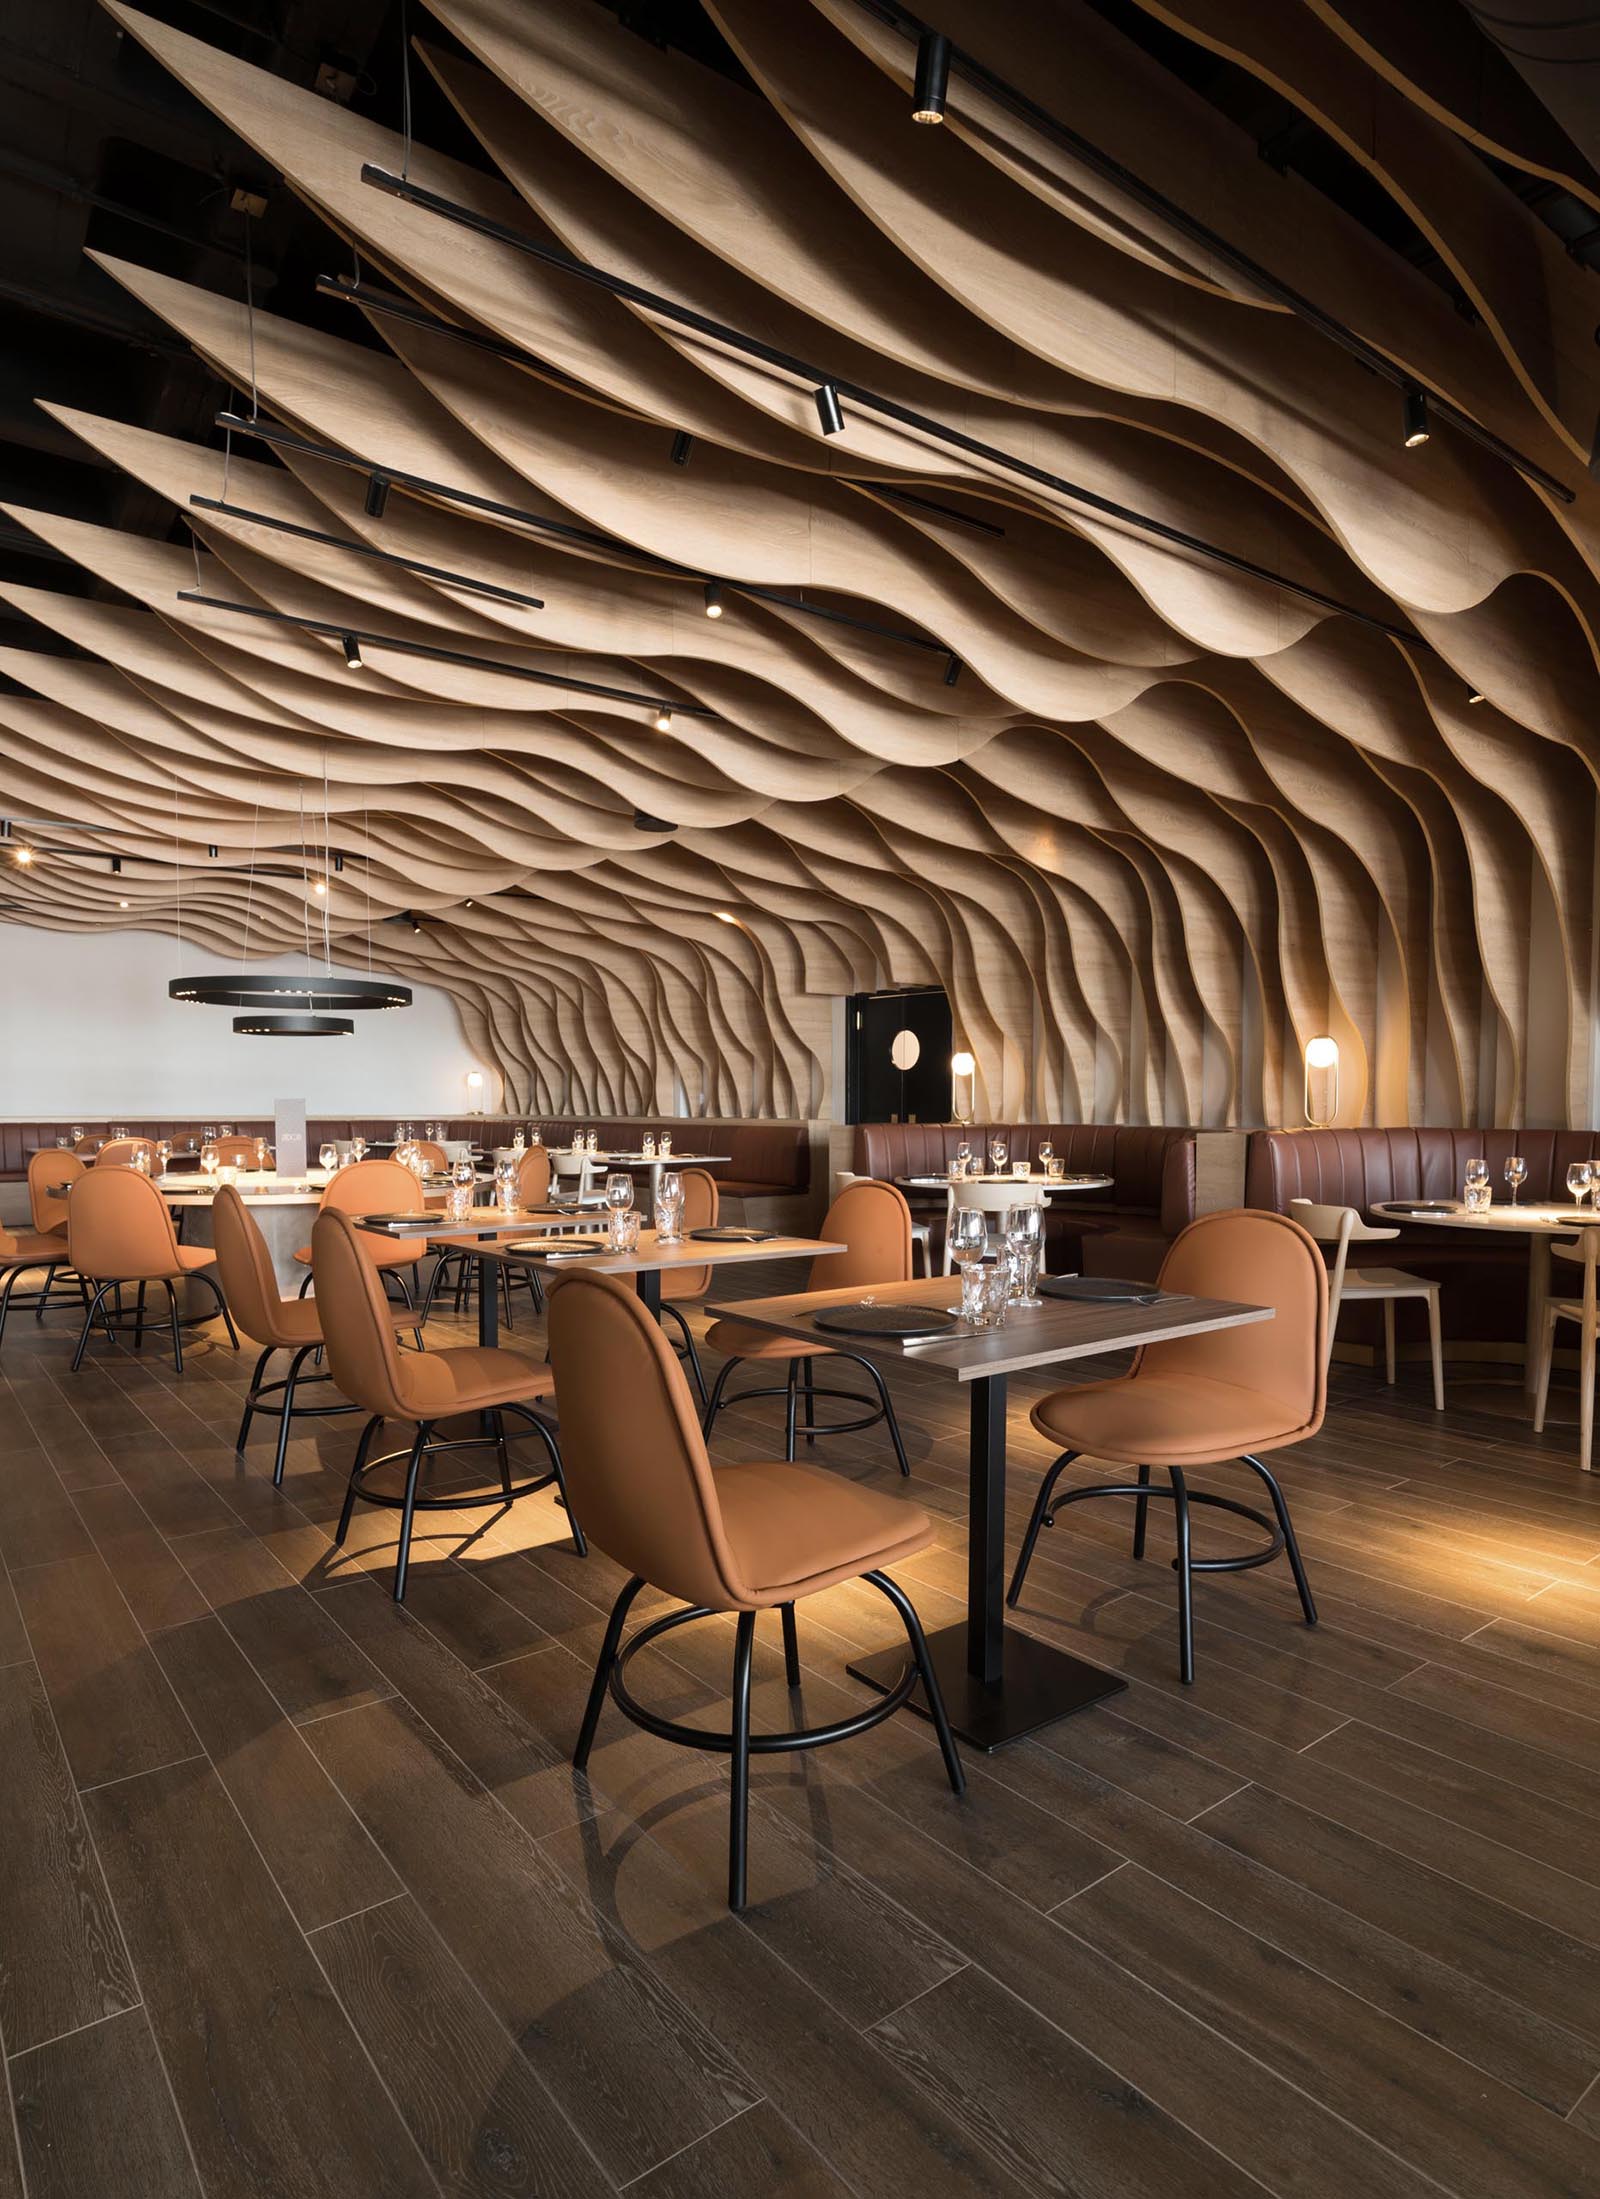 Современный ресторан со скульптурными деревянными ребрами, которые покрывают стены и потолок и гармонируют с окружающей мебелью.